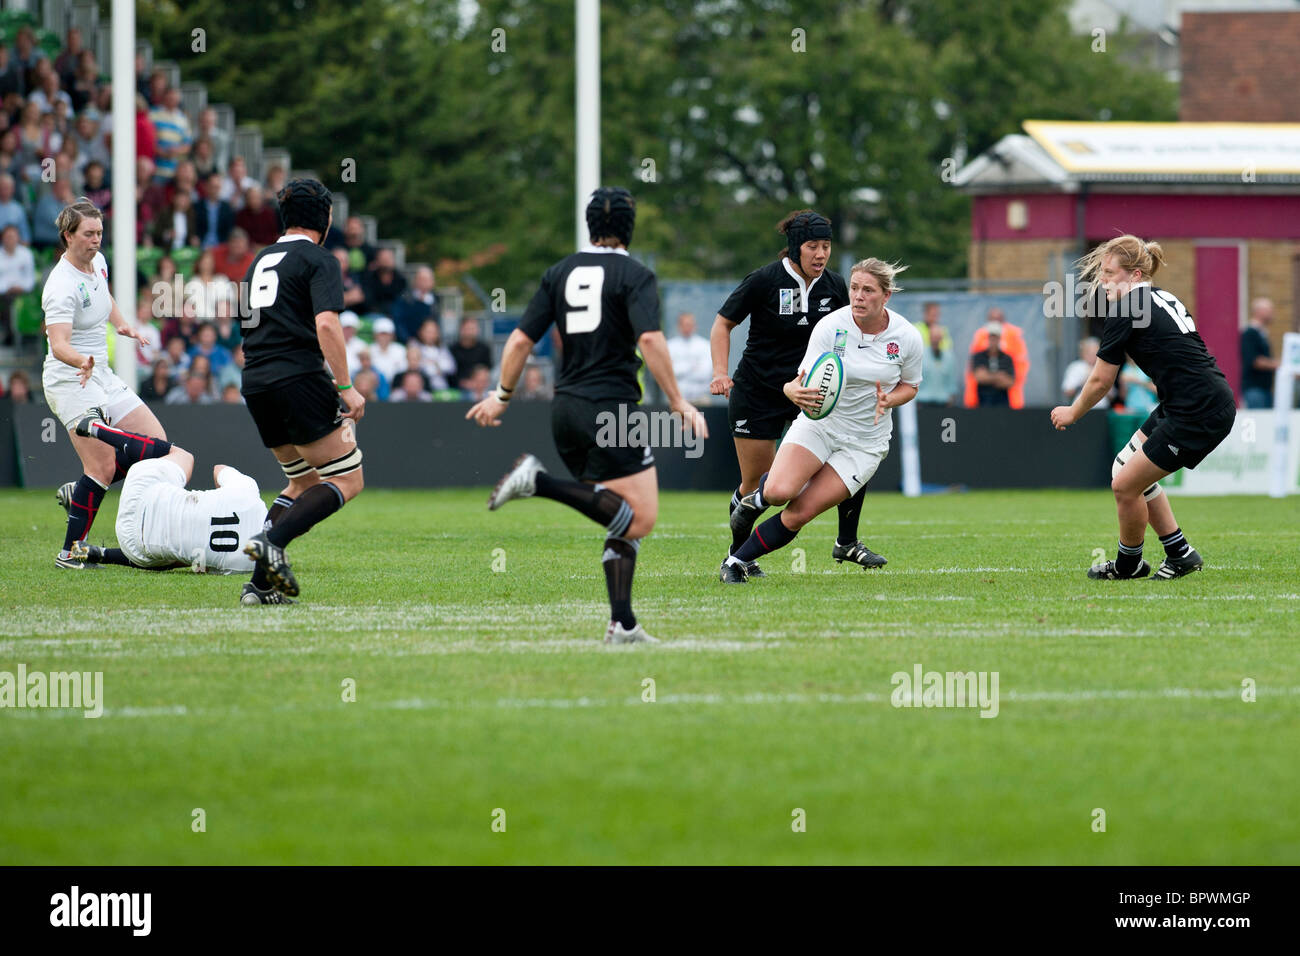 La final entre Inglaterra y Nueva Zelanda. Inglaterra perdió 13-10. La iRB organizado de mujeres Rugby World Cup Foto de stock